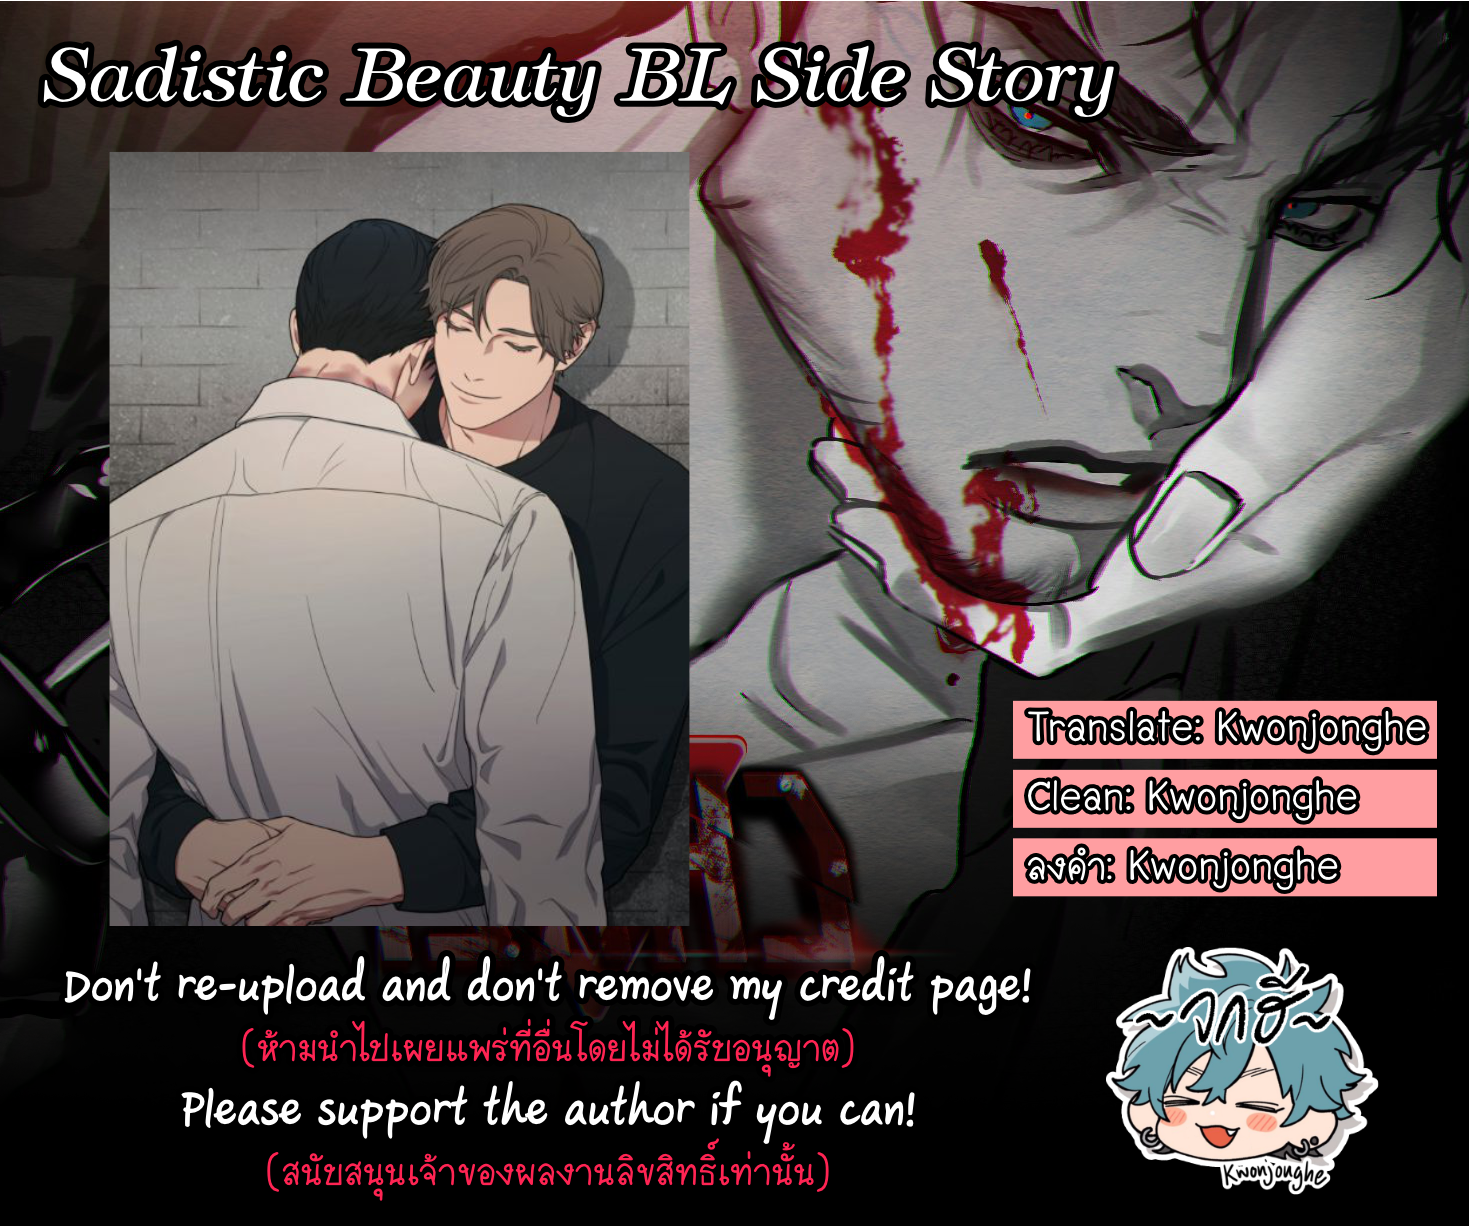 Sadistic-Beauty-Side-Story-B-33-2.png